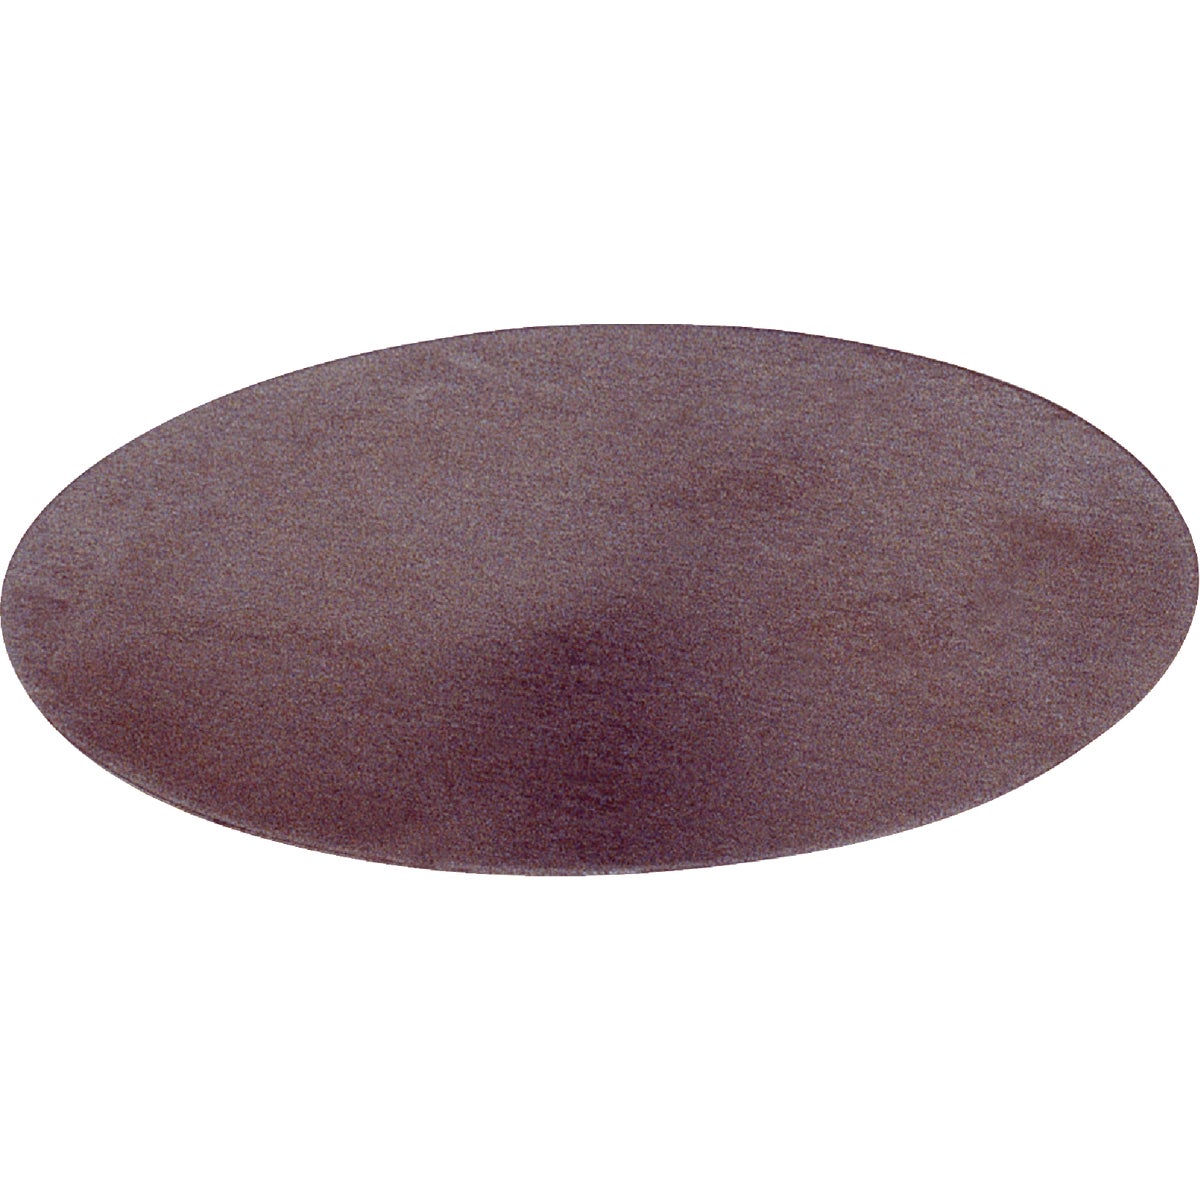 Item 750233, 2-1/2" diameter metal cap tab.